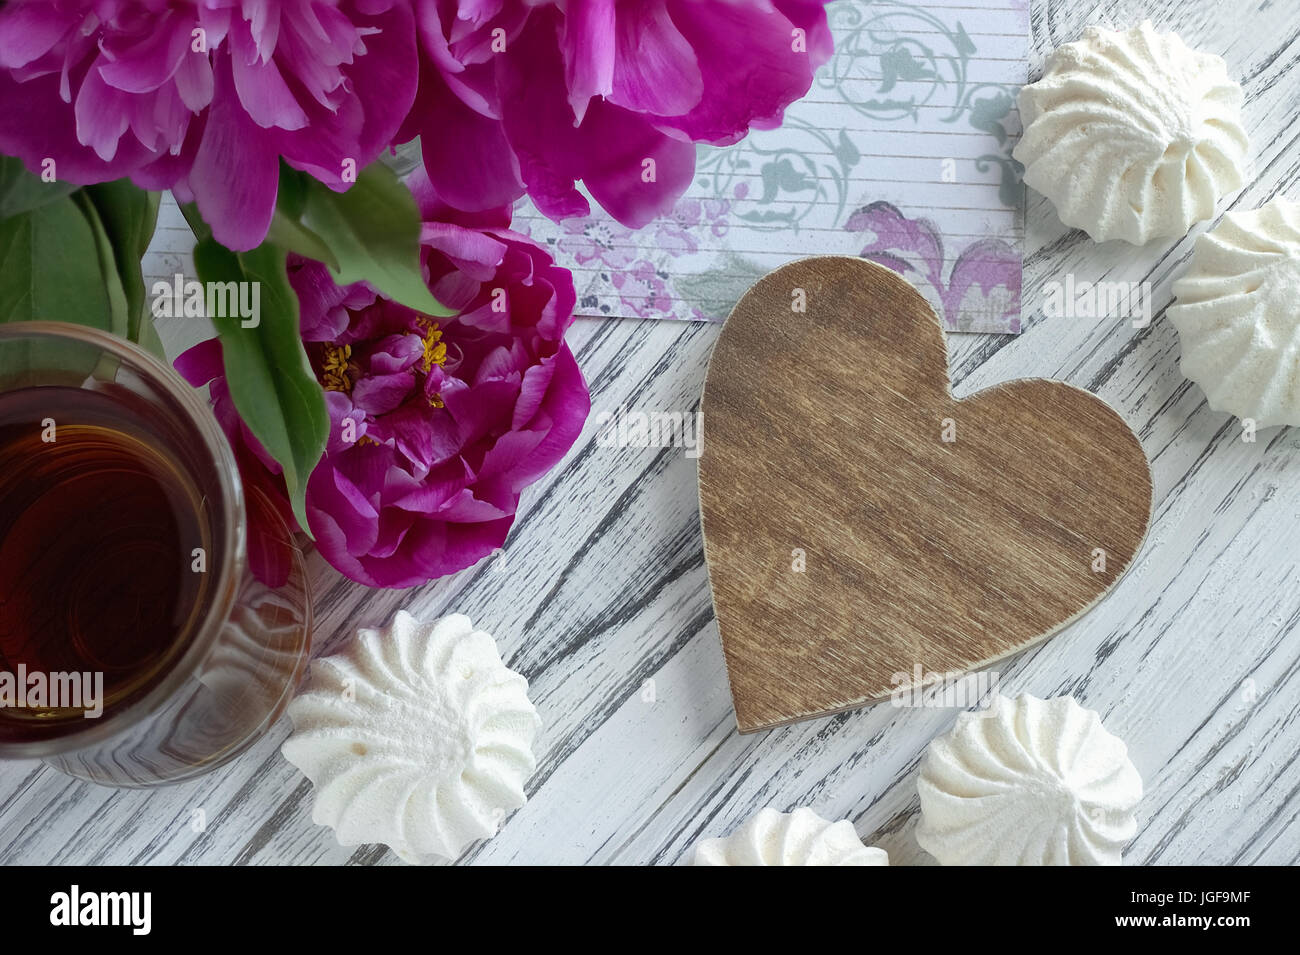 Päonien Blüten rosa Glas Tee mit braunem Holz- Herzen Marshmallow auf weißem Hintergrund Holz-stock Bild Stockfoto